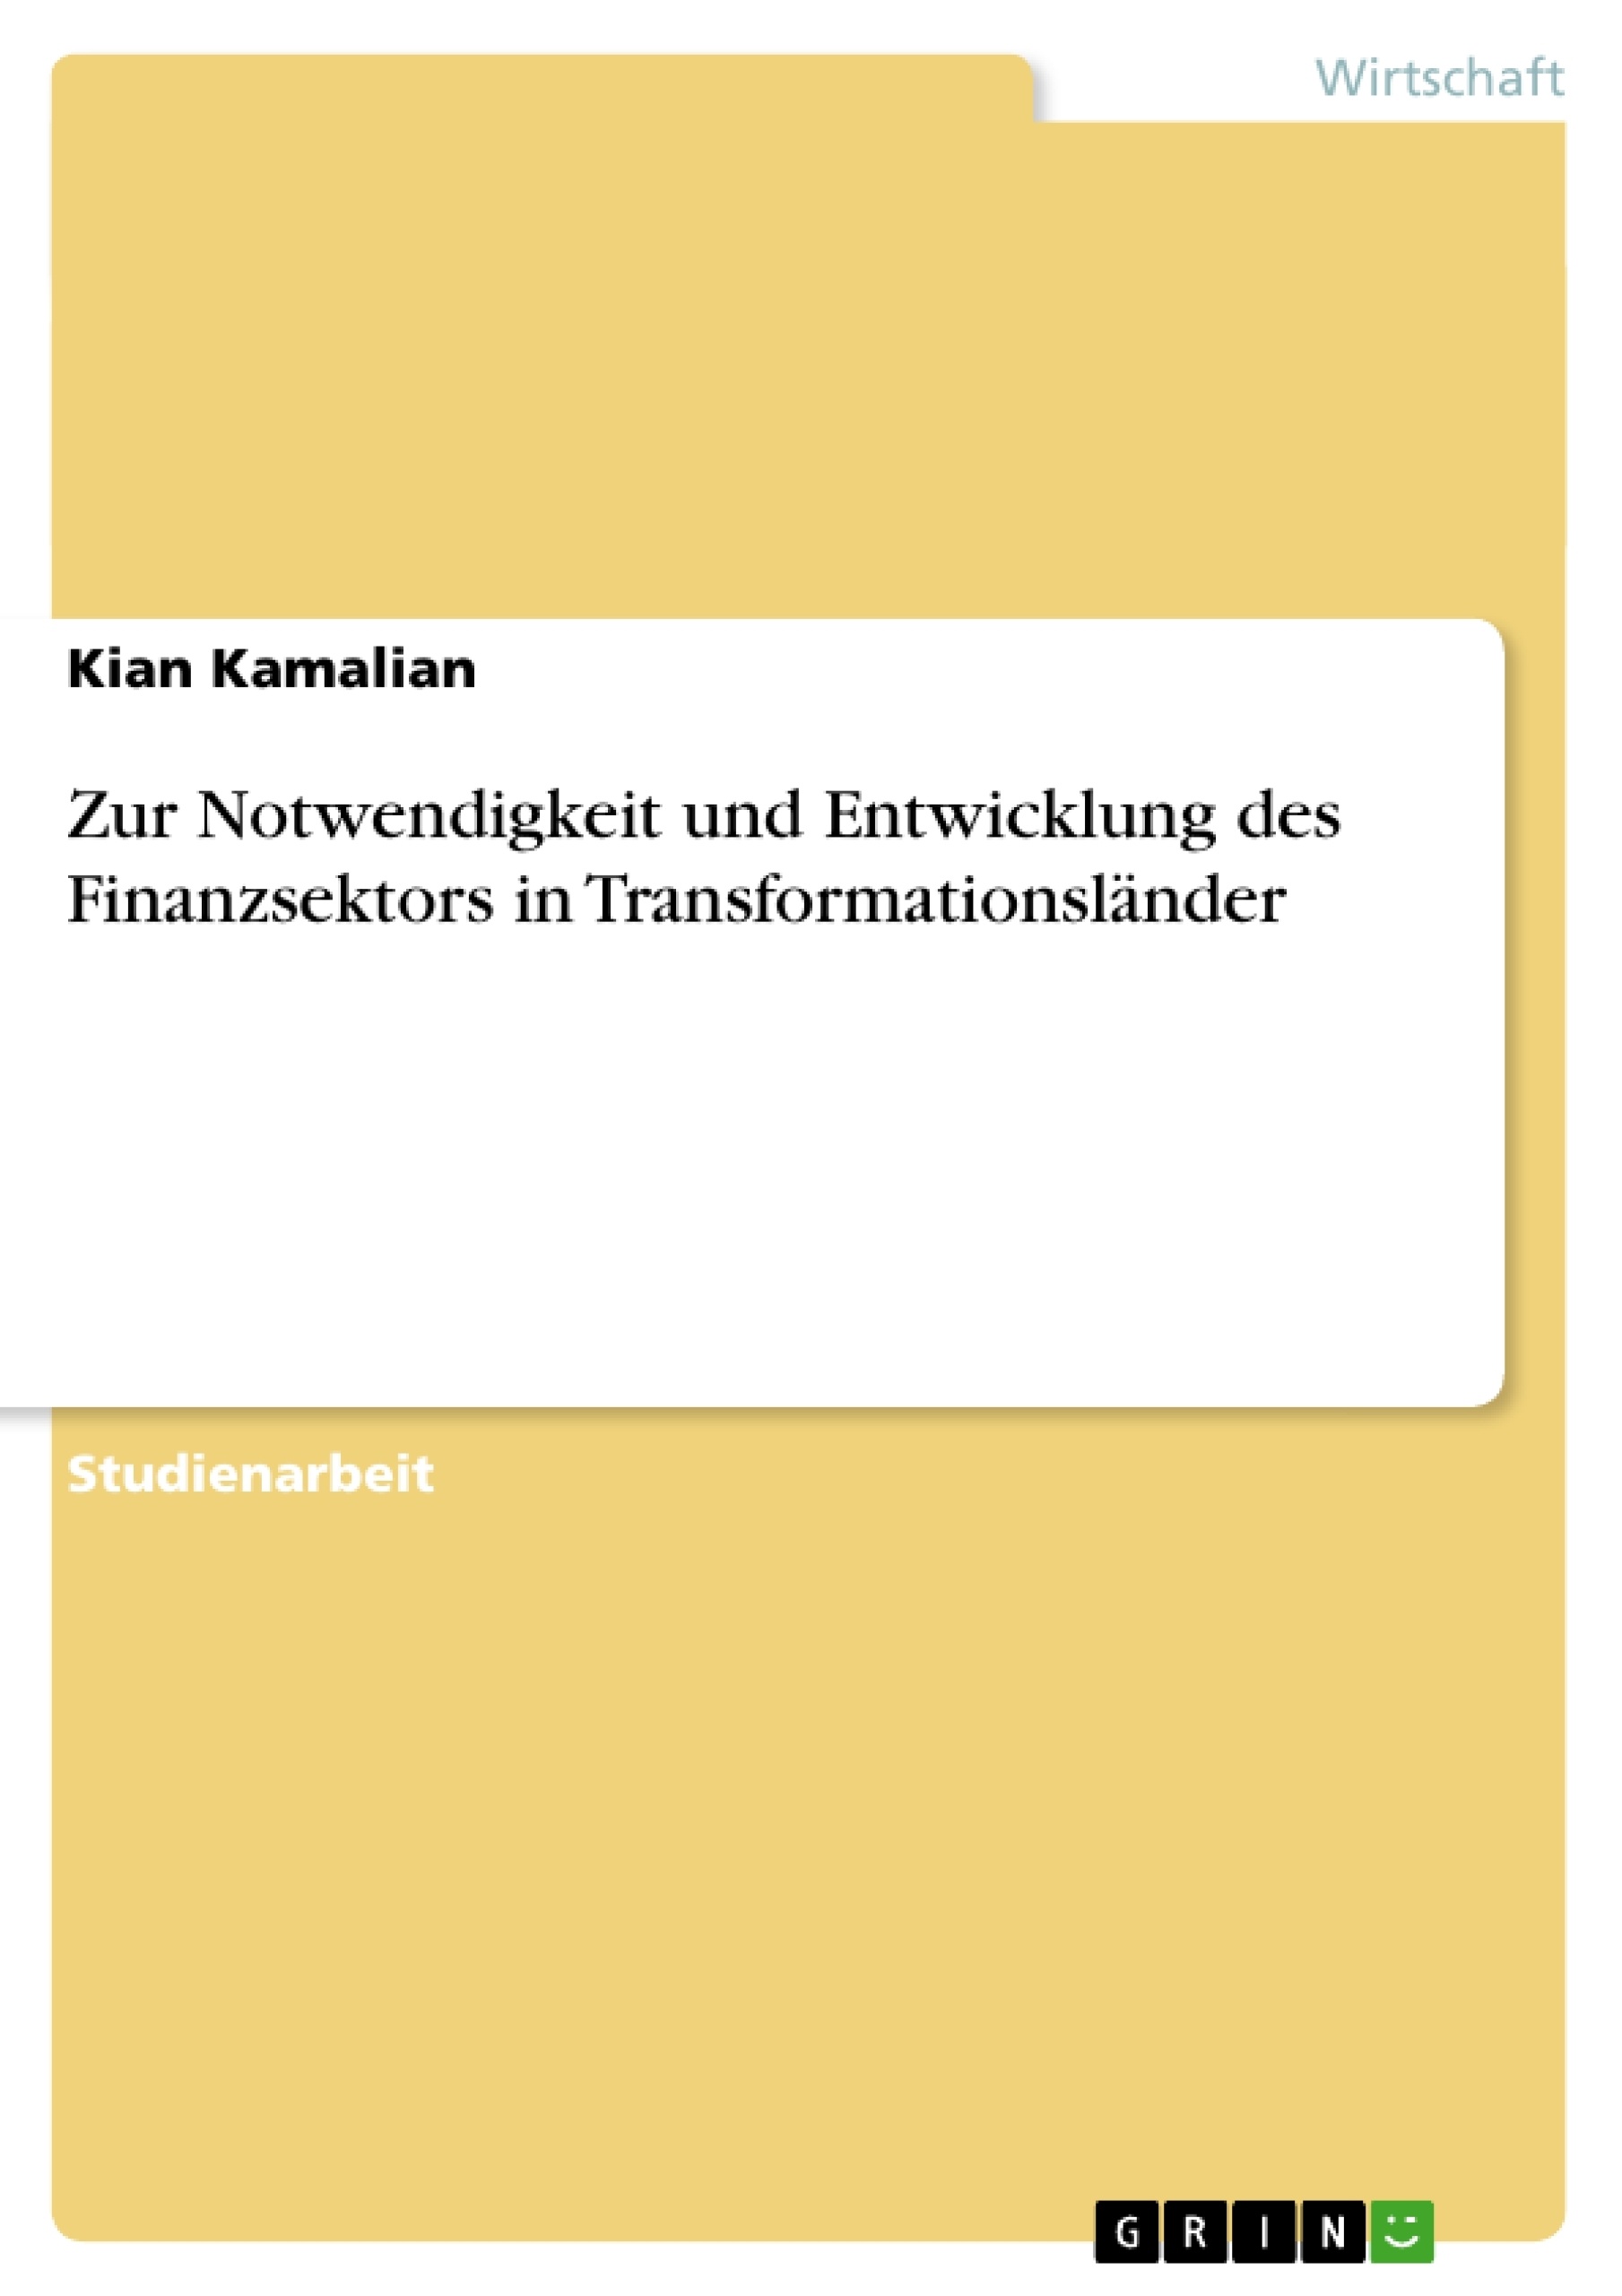 Título: Zur Notwendigkeit und Entwicklung des Finanzsektors in Transformationsländer